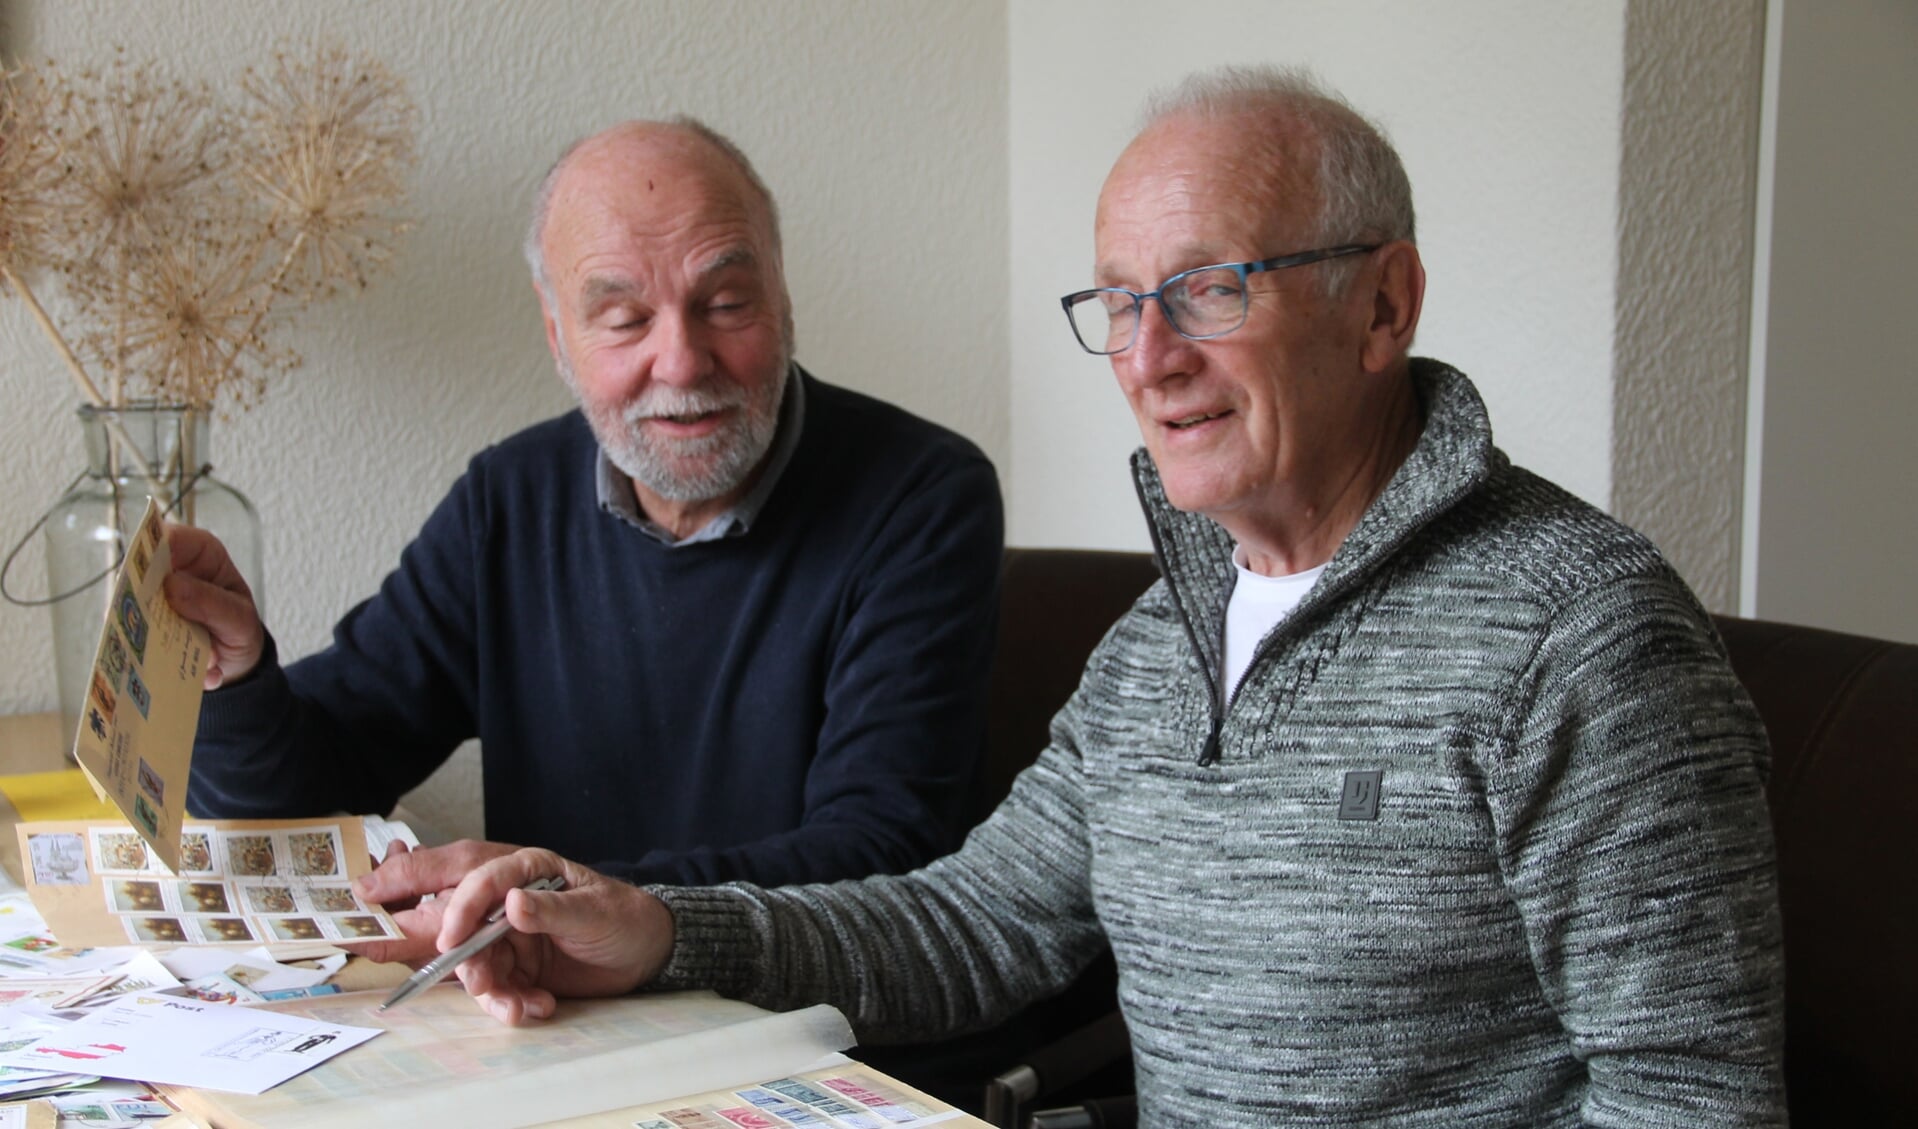 Hans Bragt (l) en Joop Doornheim van fllatelistenvereniging De Klomp: "In tegenstelling tot vroeger wordt nu meer op thema verzameld." Foto: Lineke Voltman